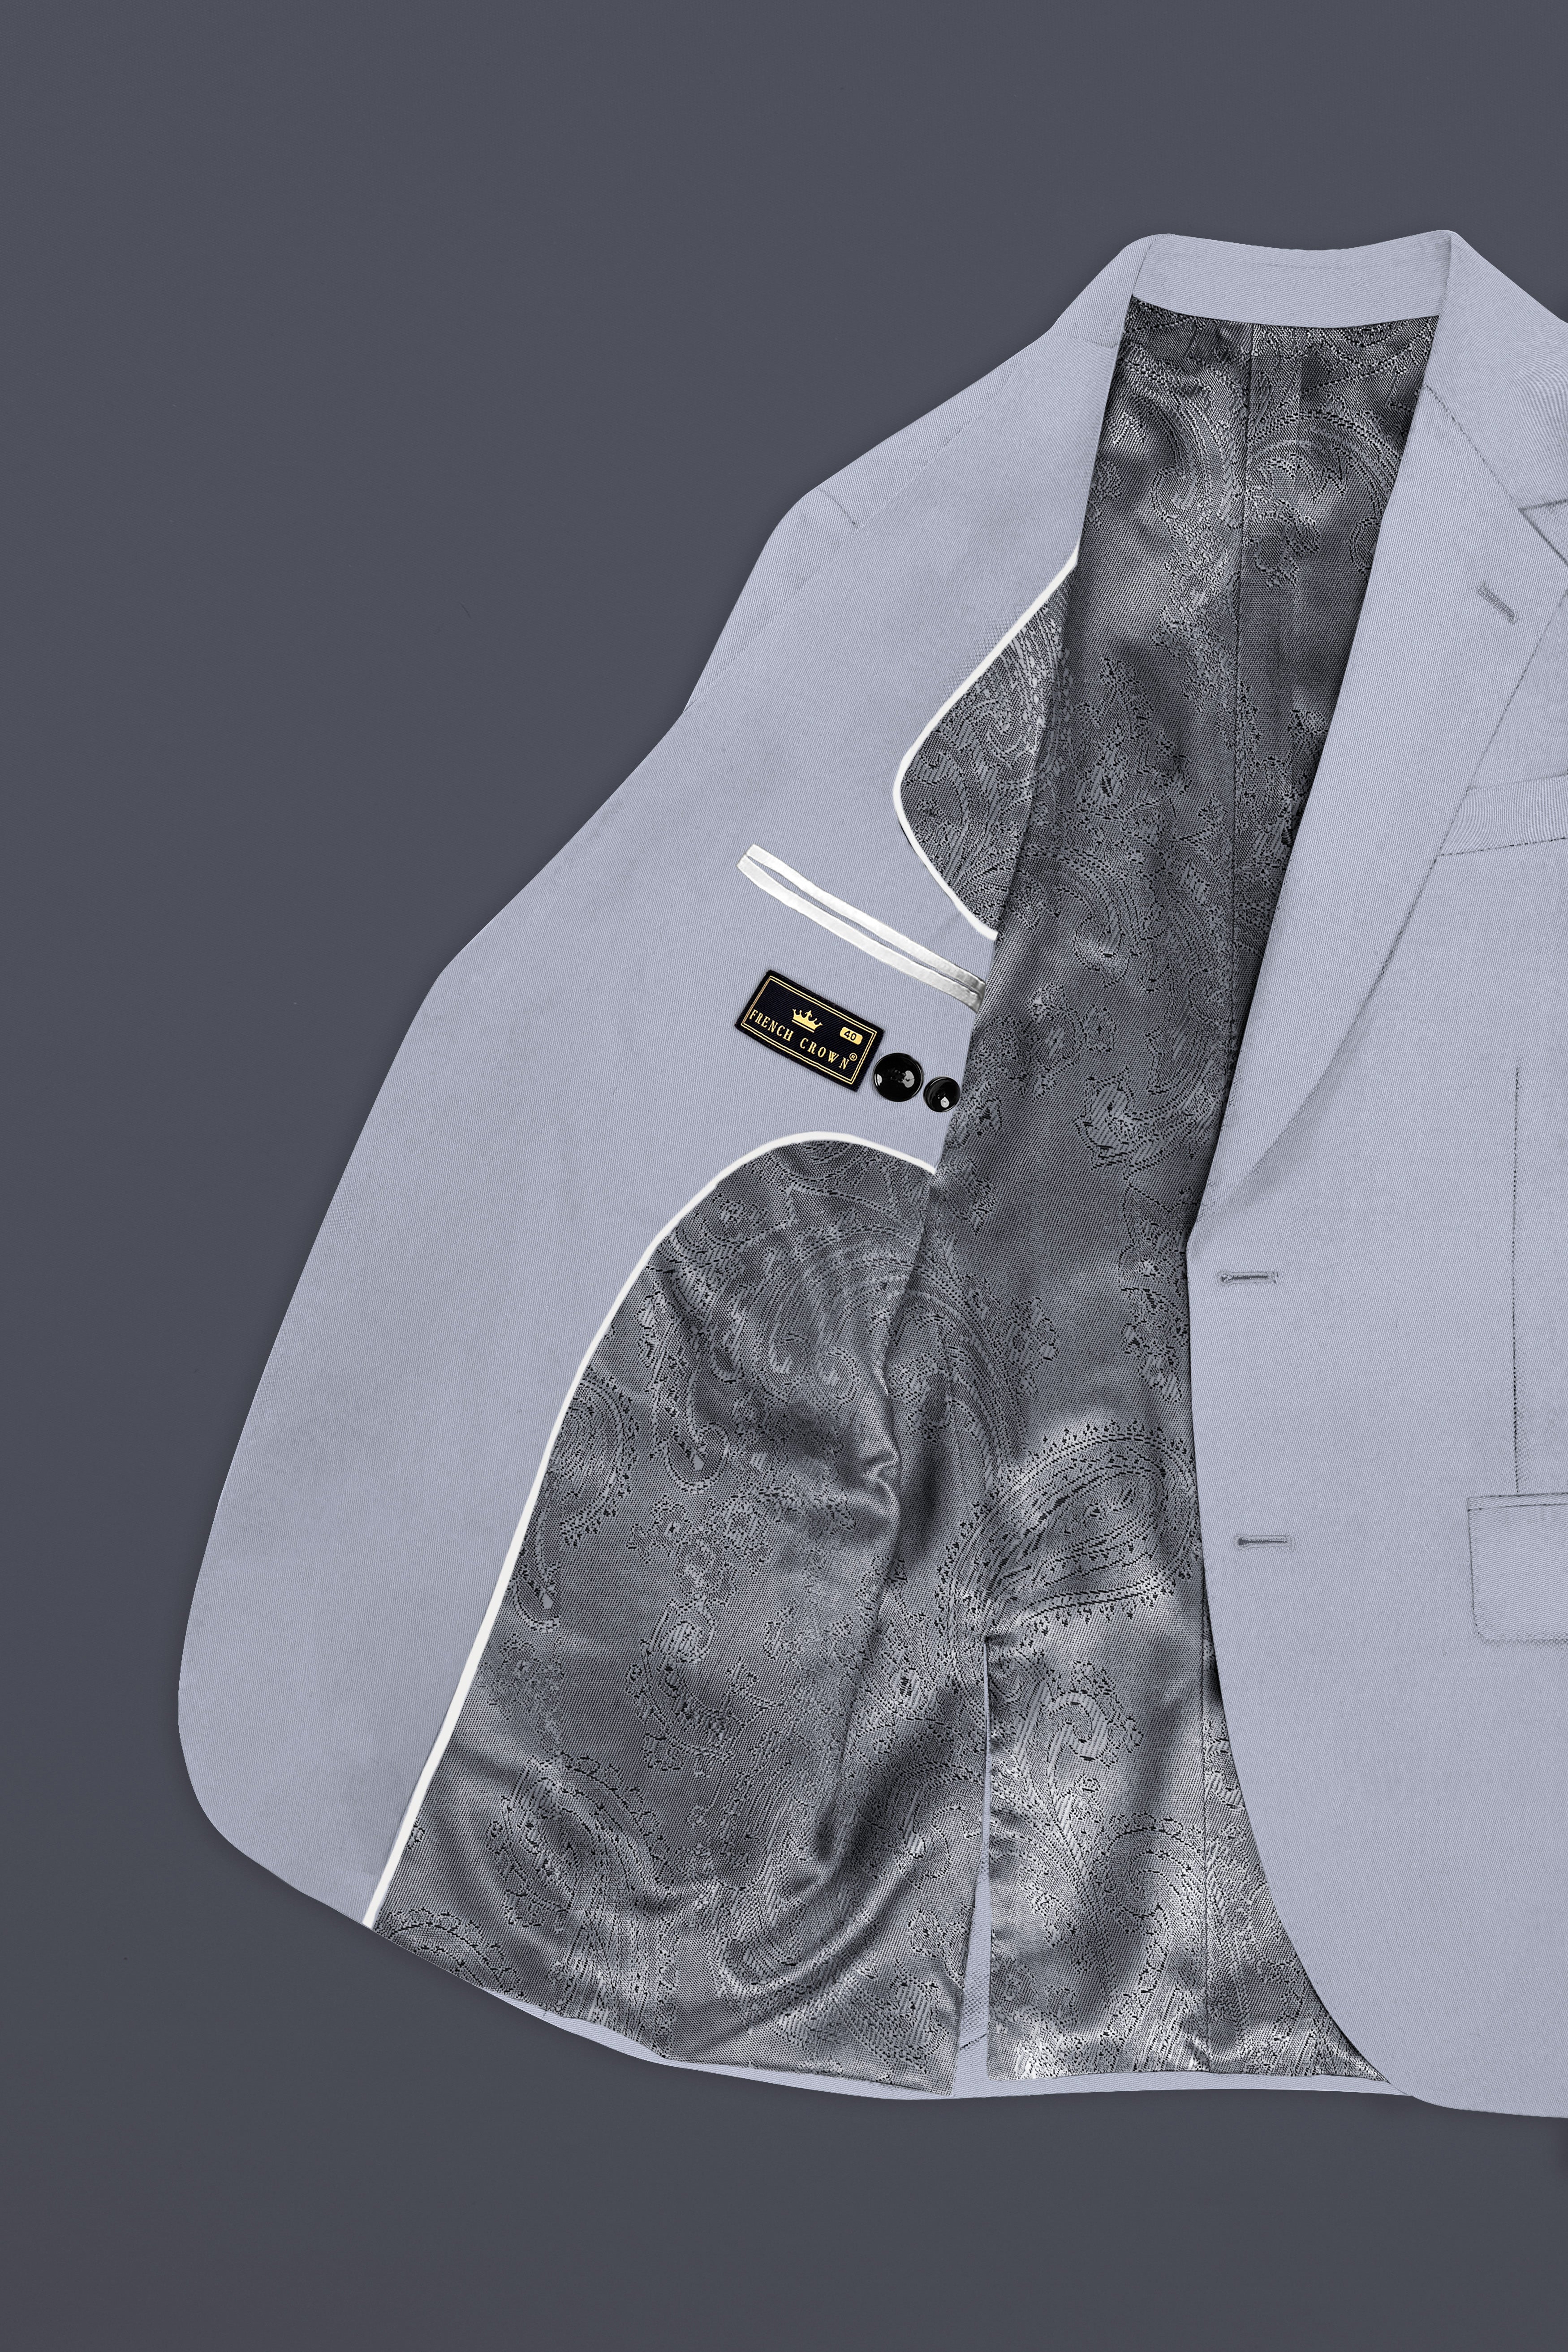 Cadet Grey Solid Premium Cotton Blazer